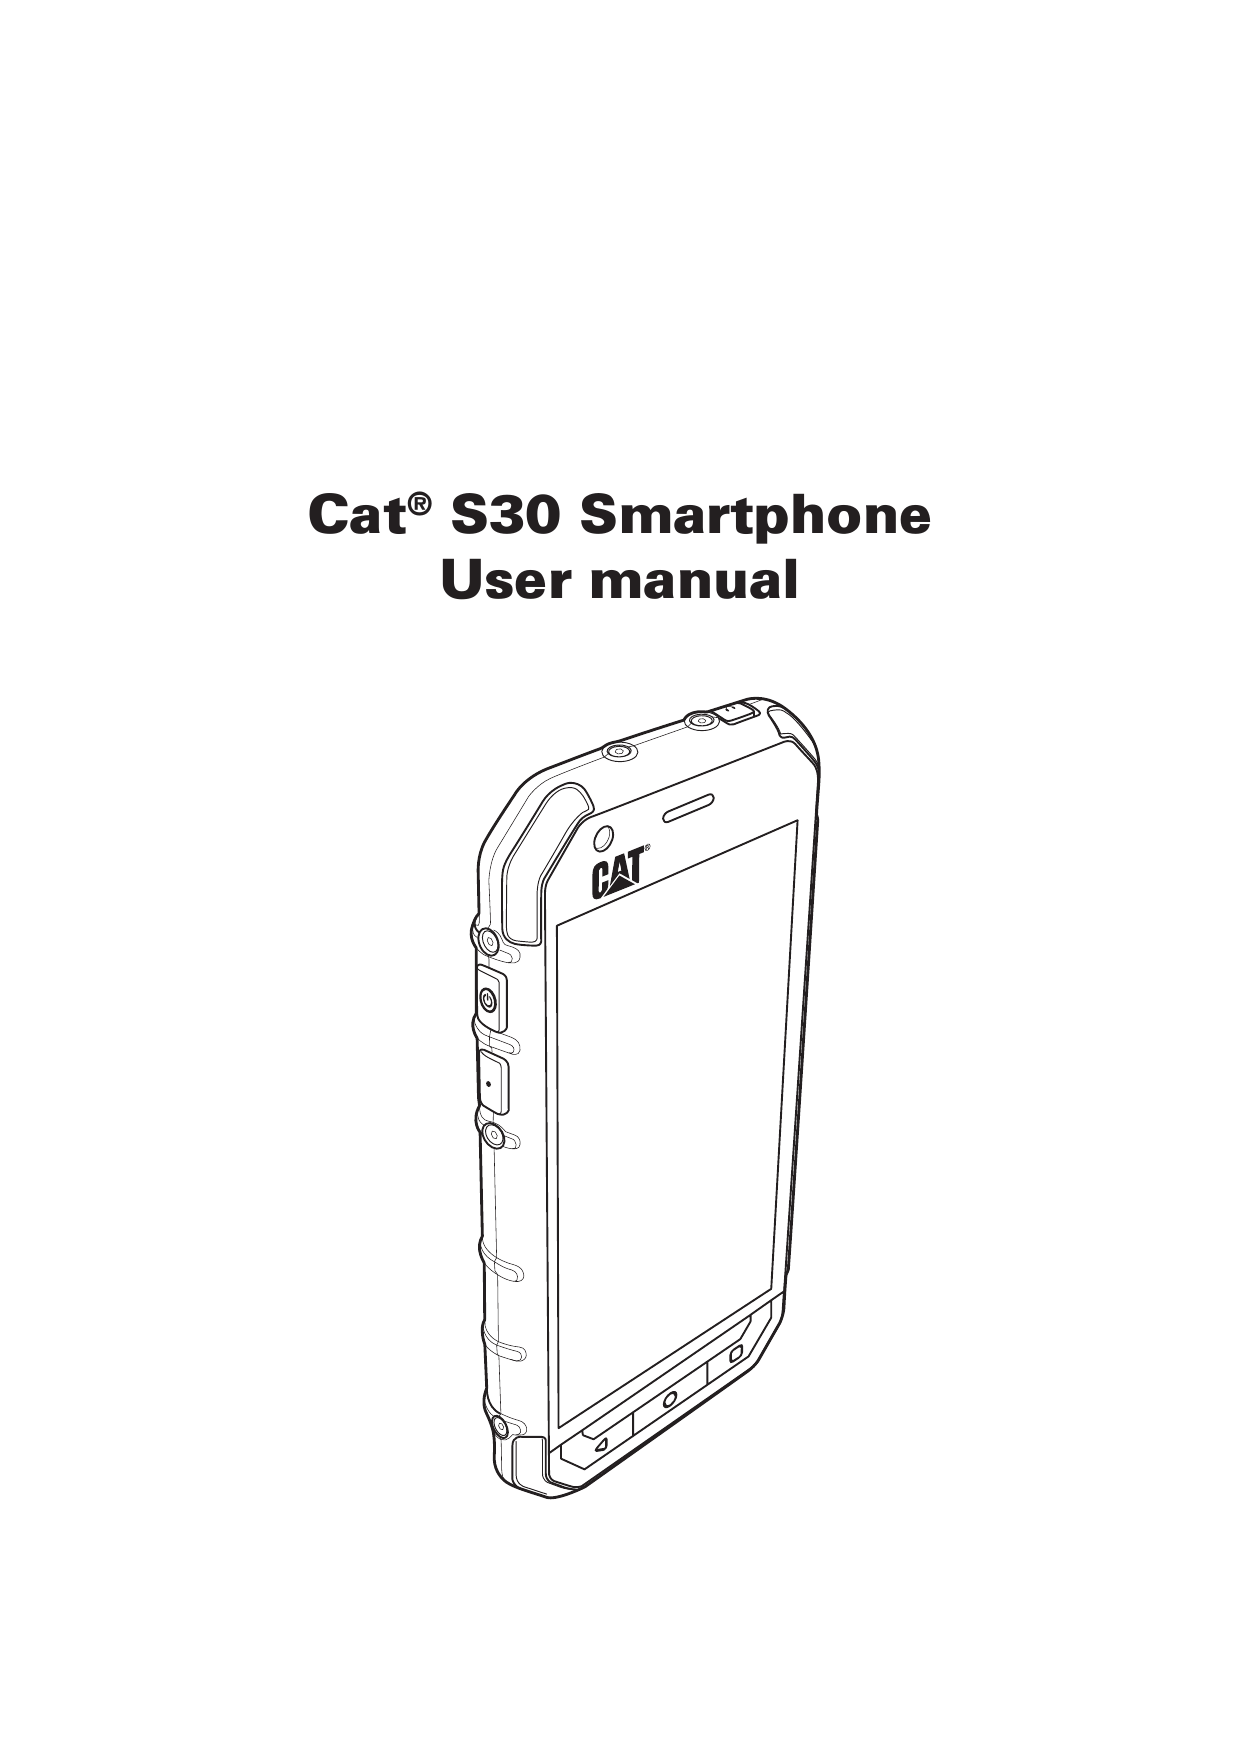 Cat® S30 SmartphoneUser manual